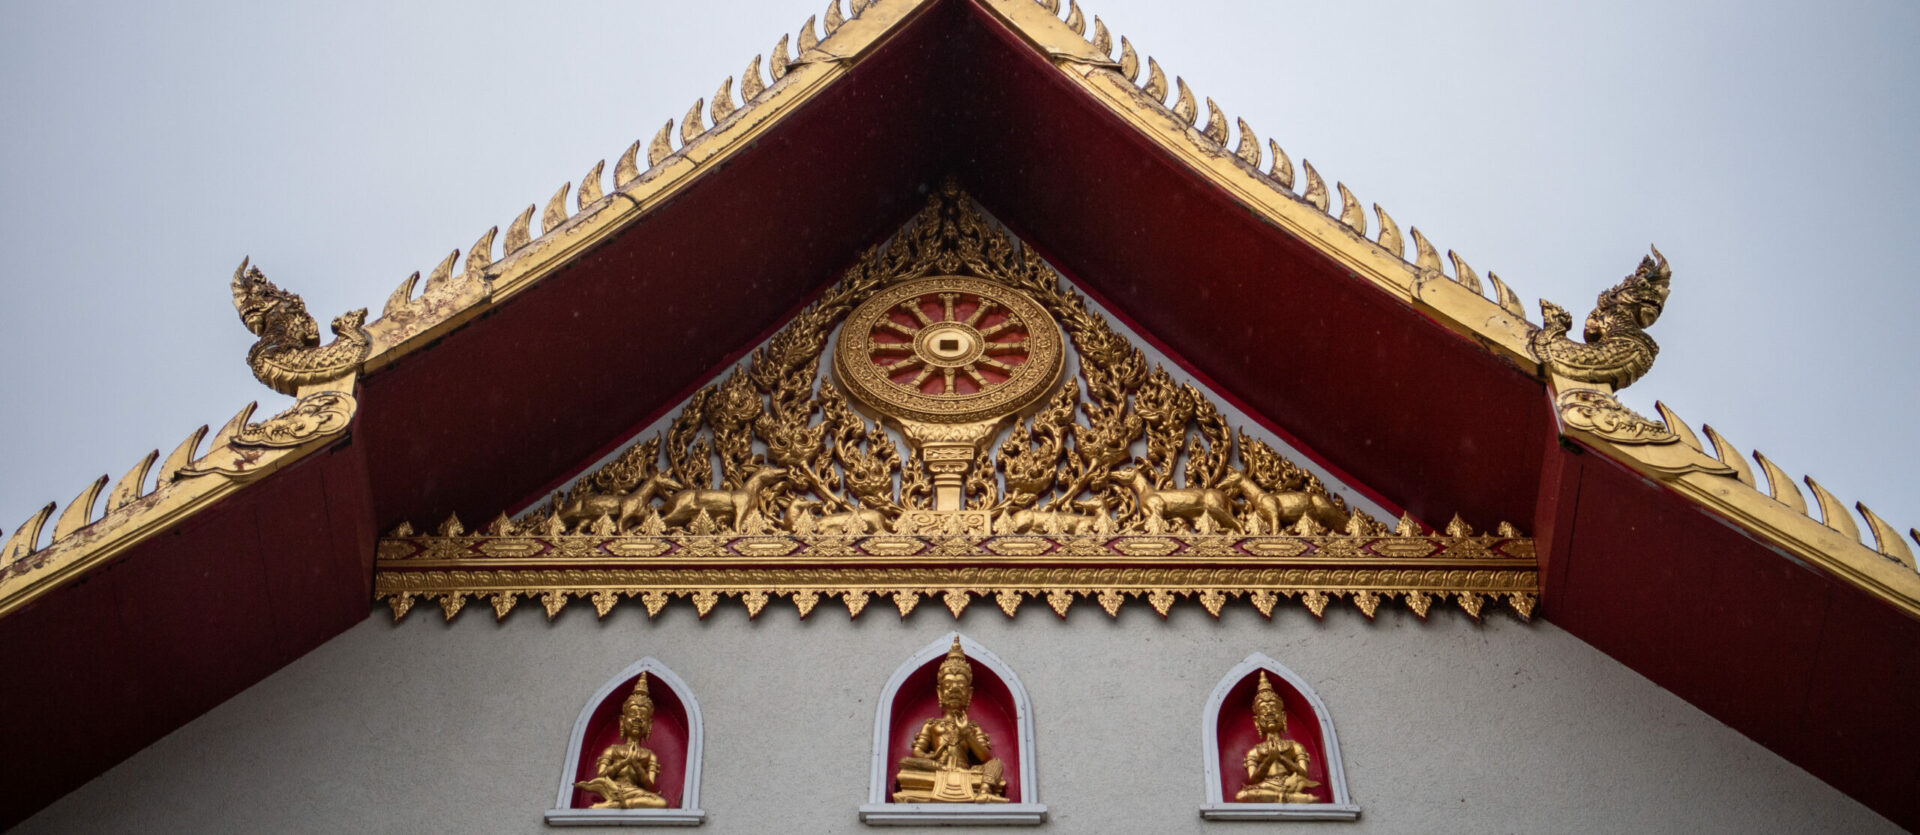 Typisch für thaibuddhistische Tempel ist das Gebäude aussen golden verziert.